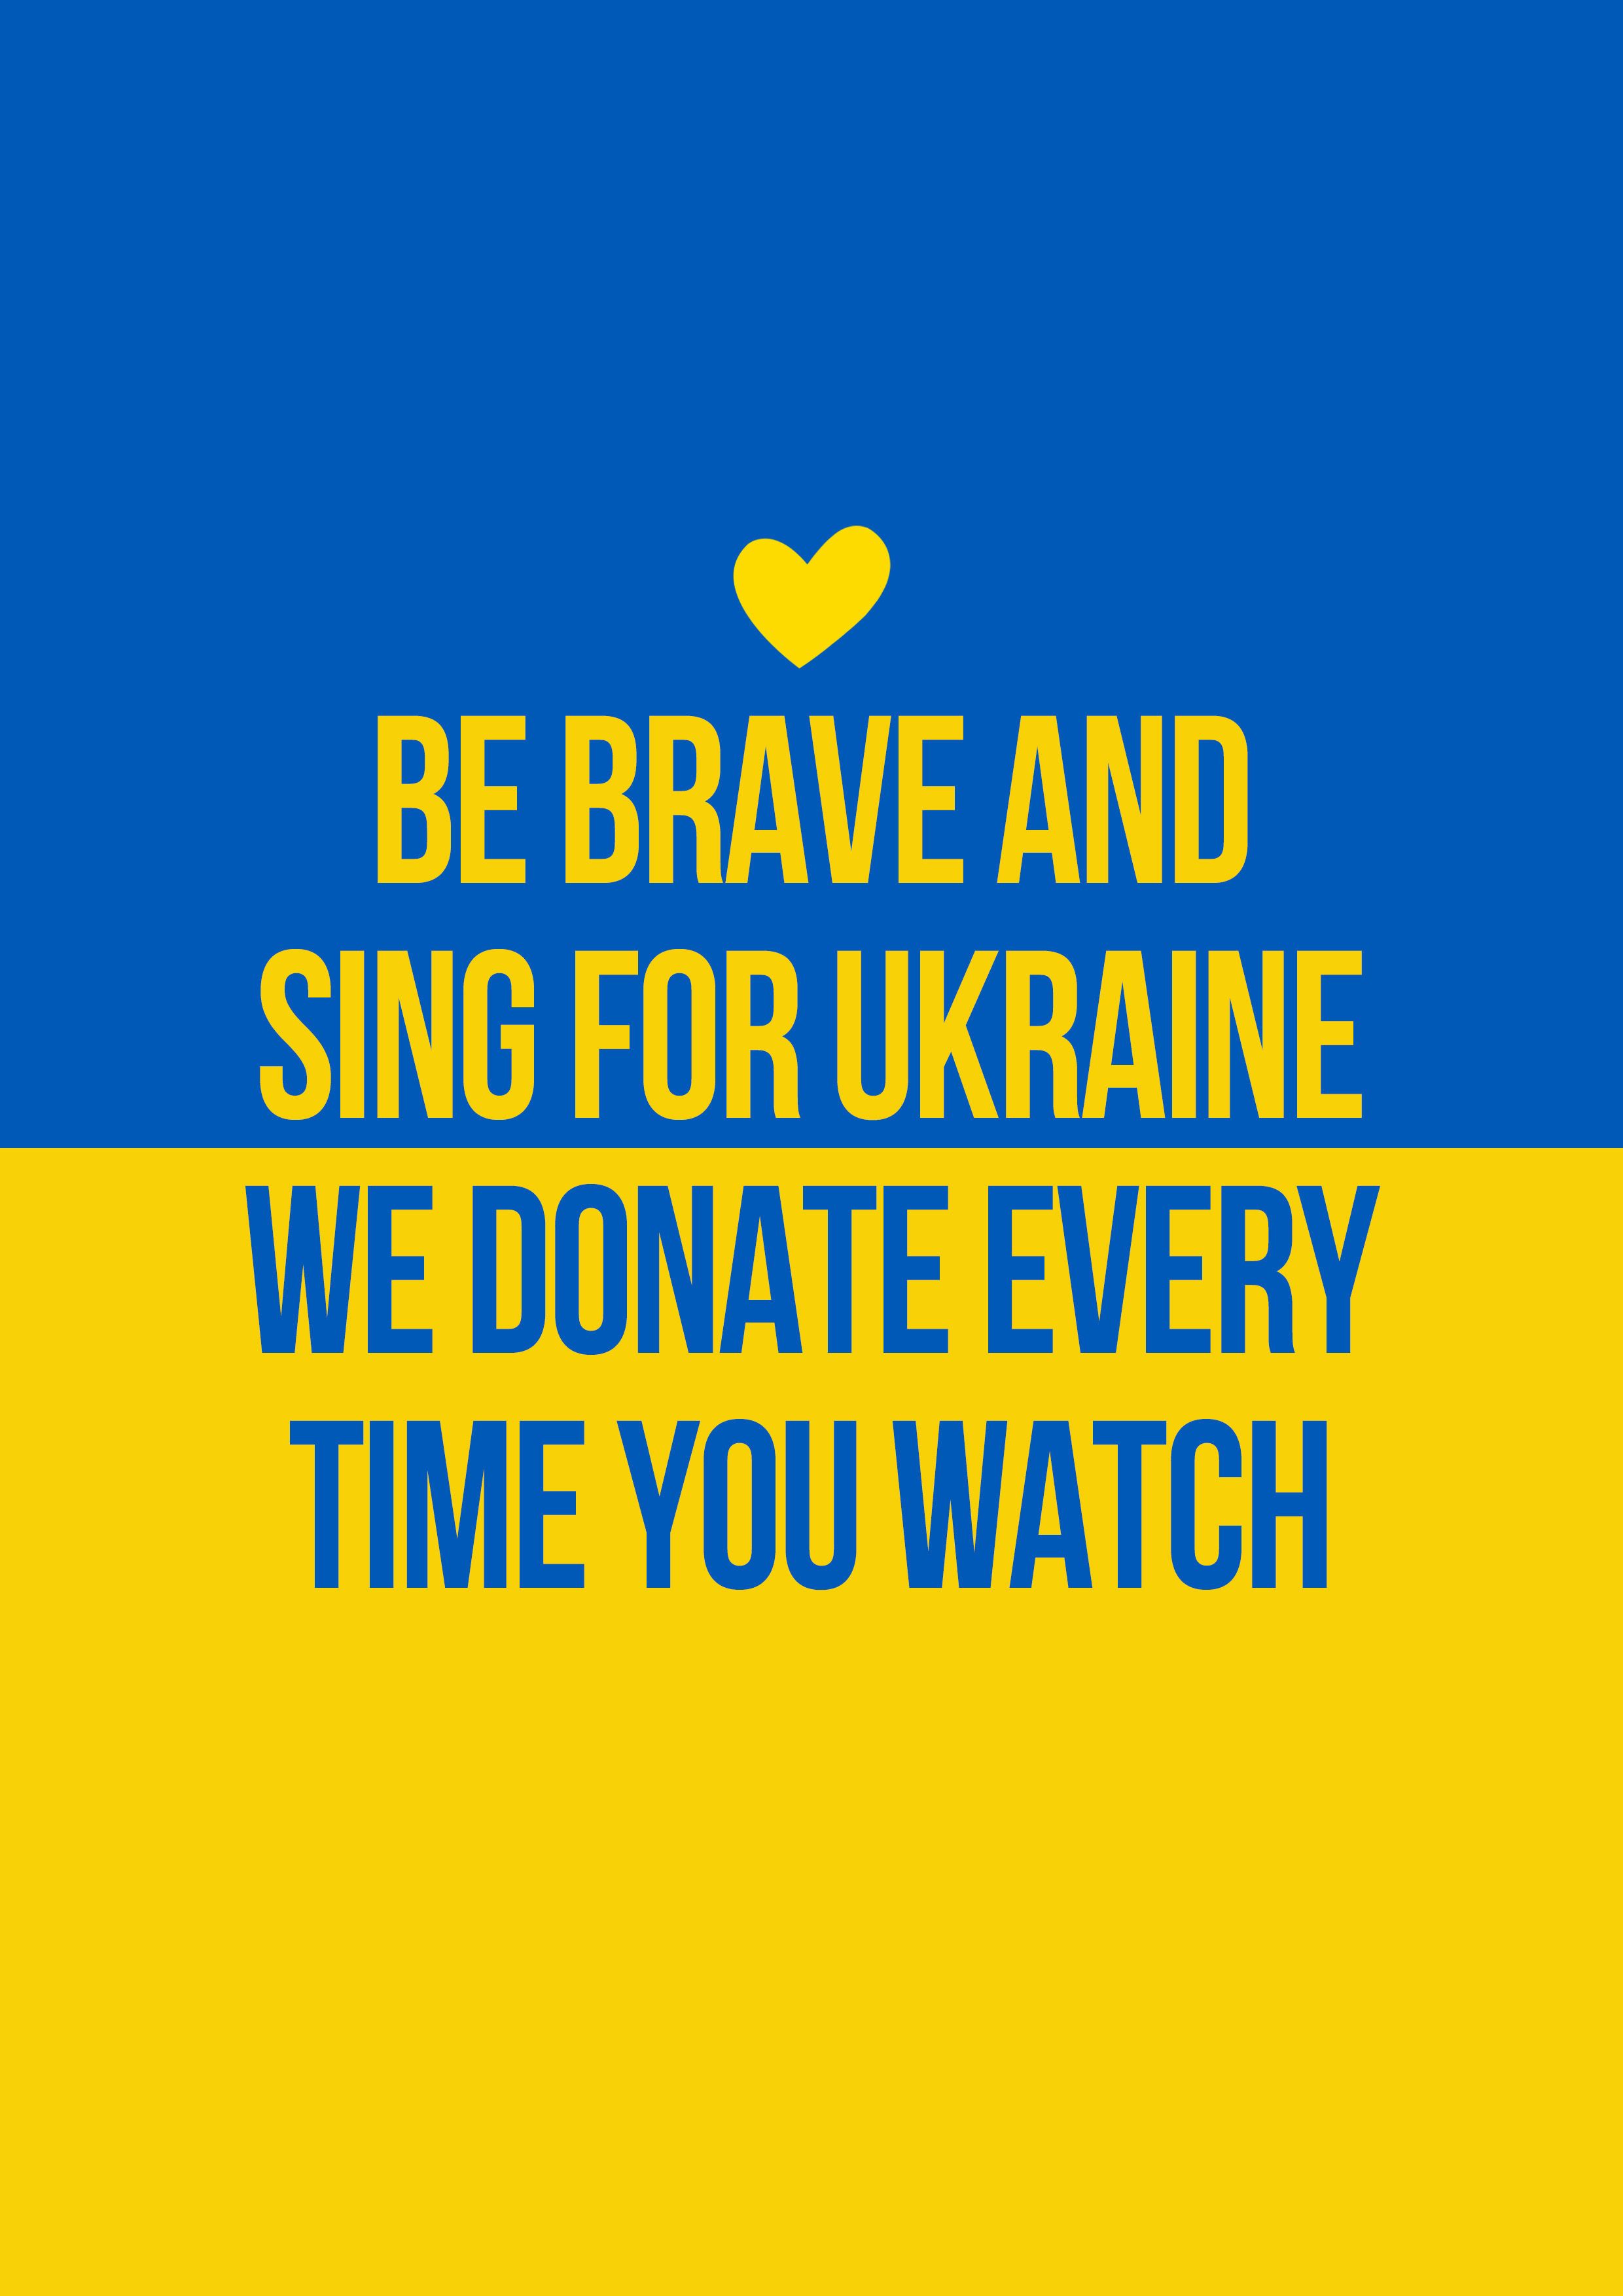 "Музыка – инструмент помощи": MOЗGI GROUP собирают деньги для украинцев, которые пострадали от войны